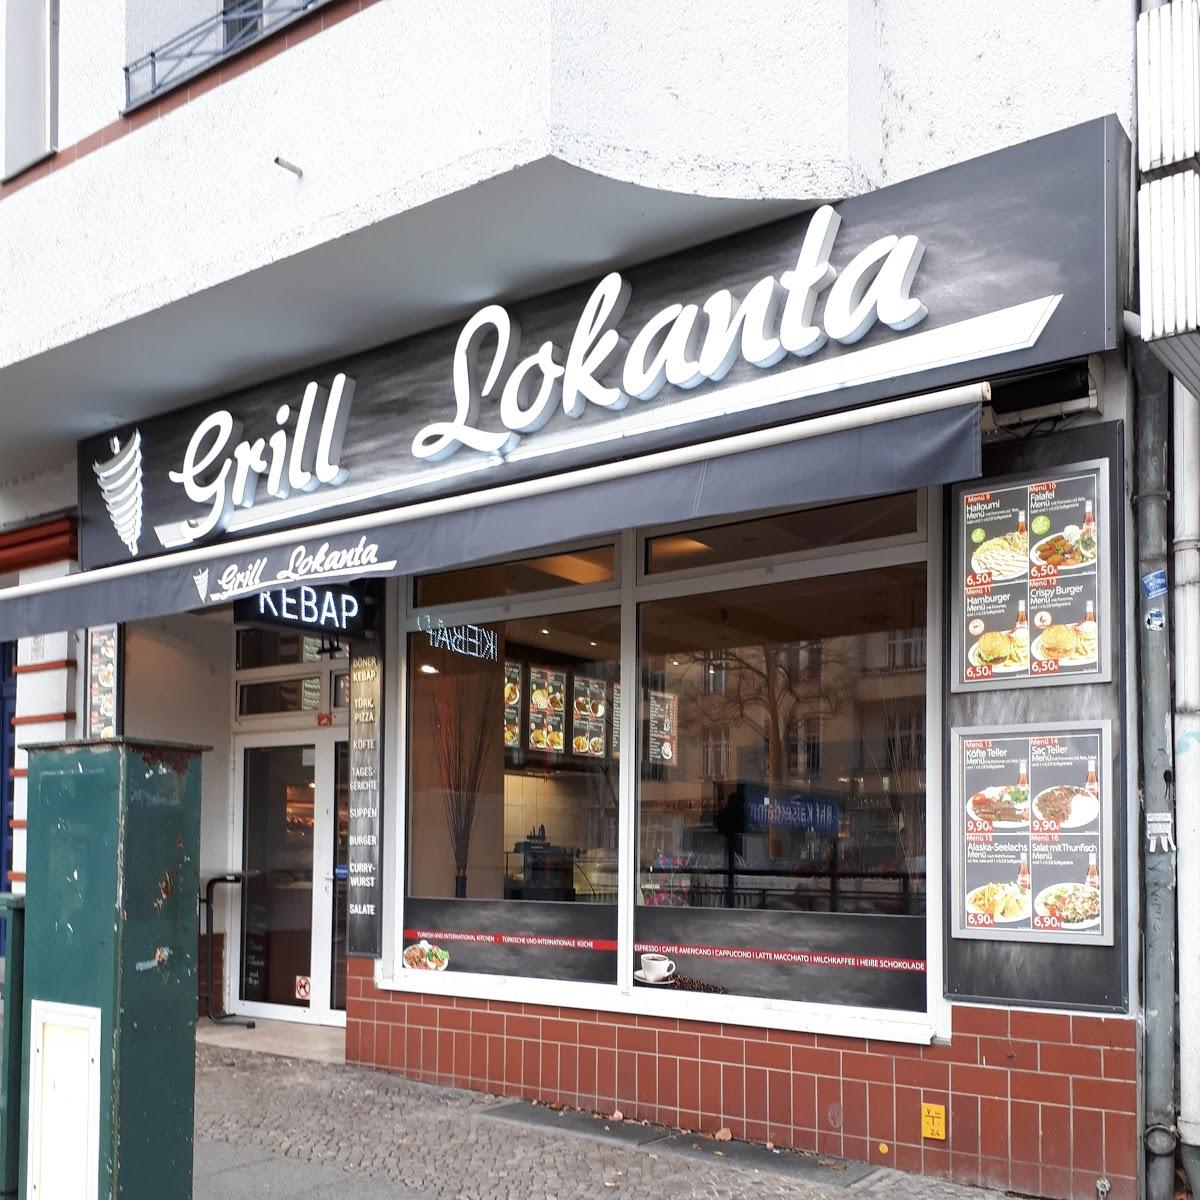 Restaurant "Grill Lokanta" in  Berlin